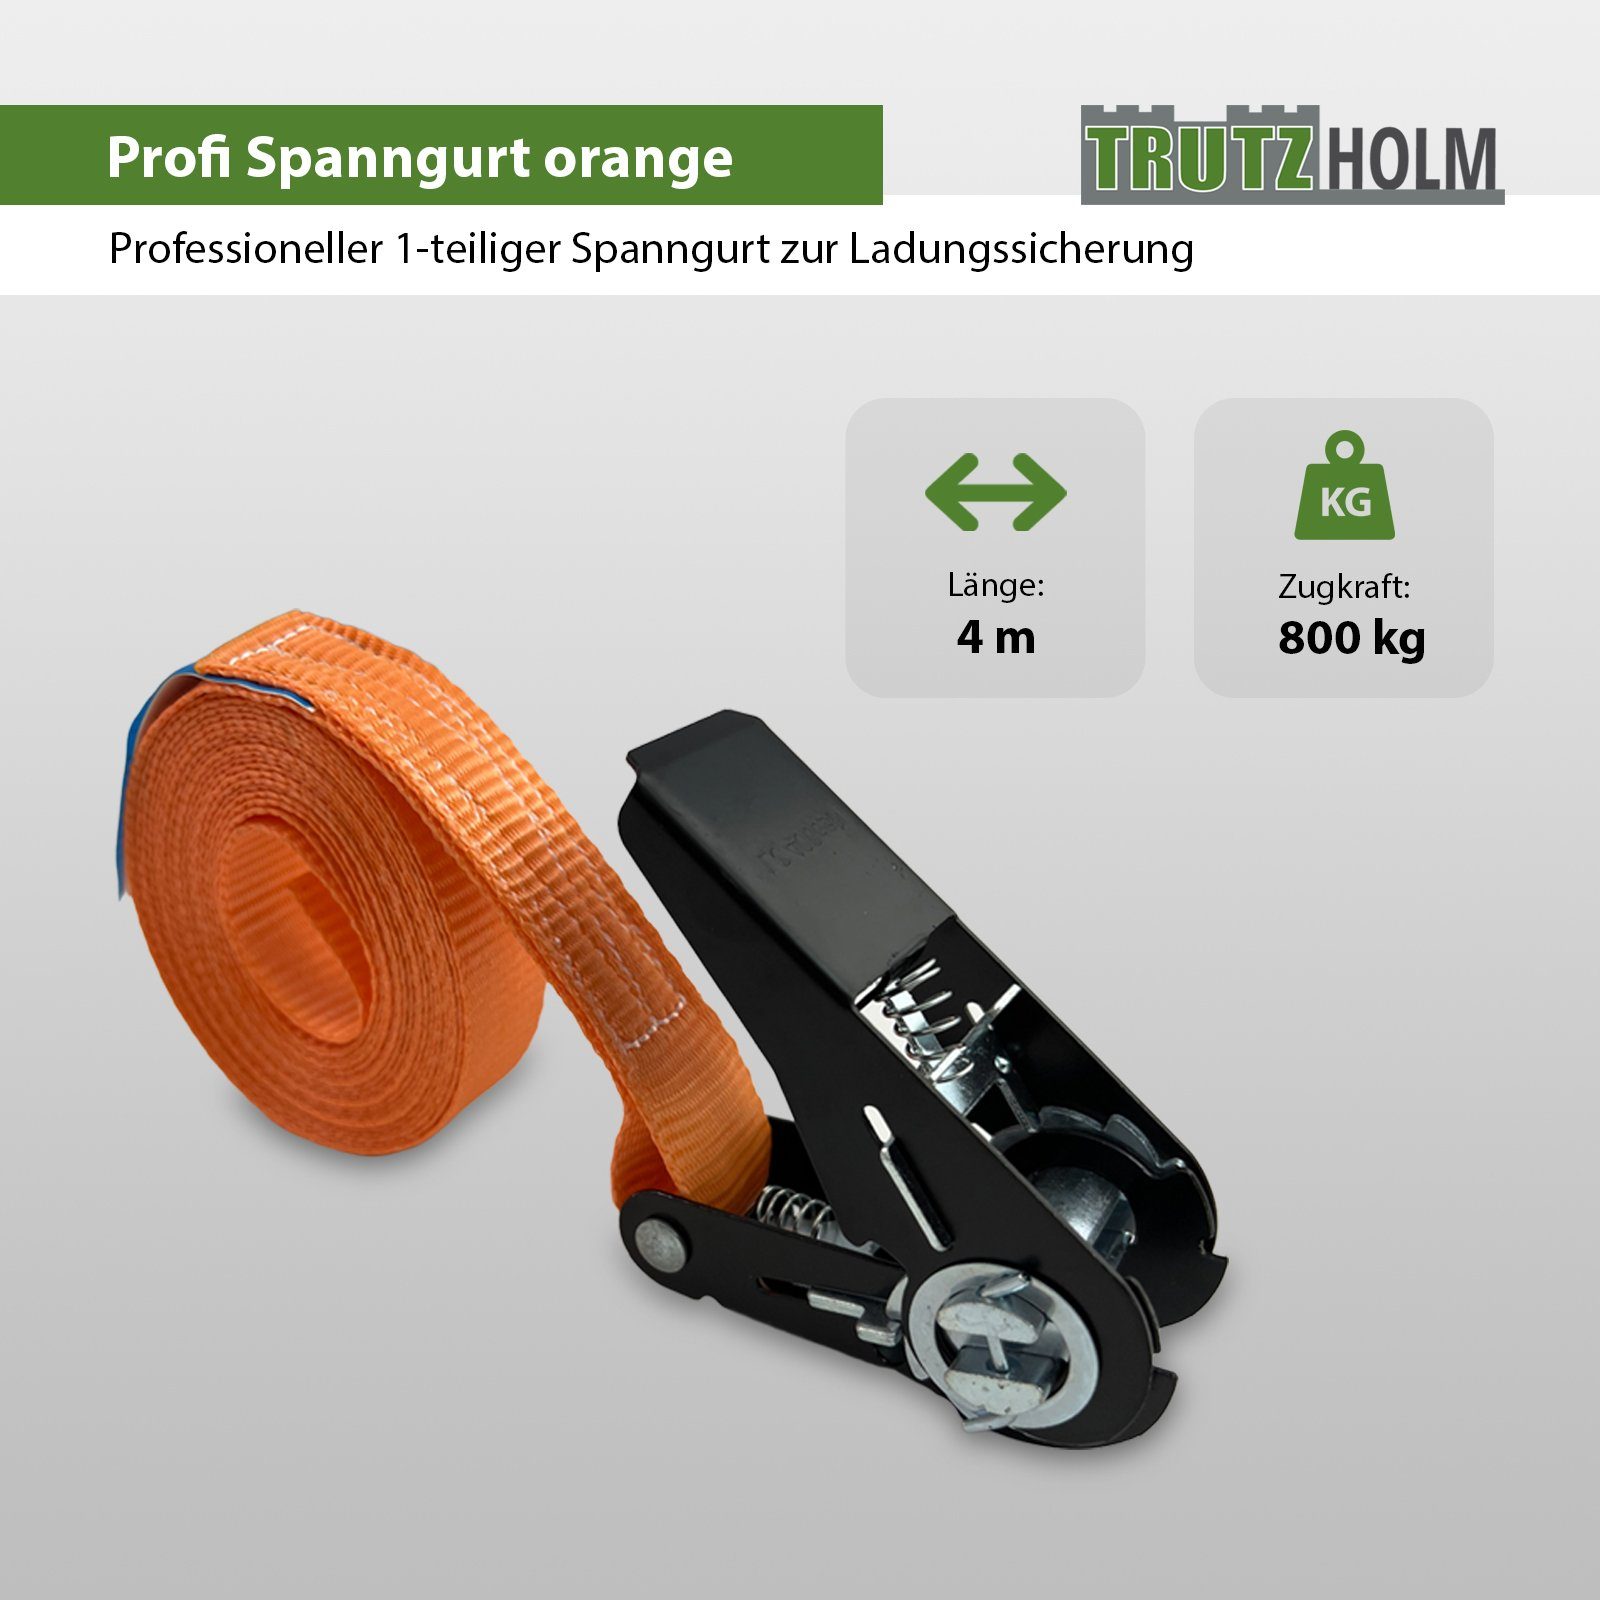 1-tlg 800kg 5x Orange Spanngurt (Set) 0,8t Spanngurte Spanngurt Schwarzes TRUTZHOLM Ratschen 4m